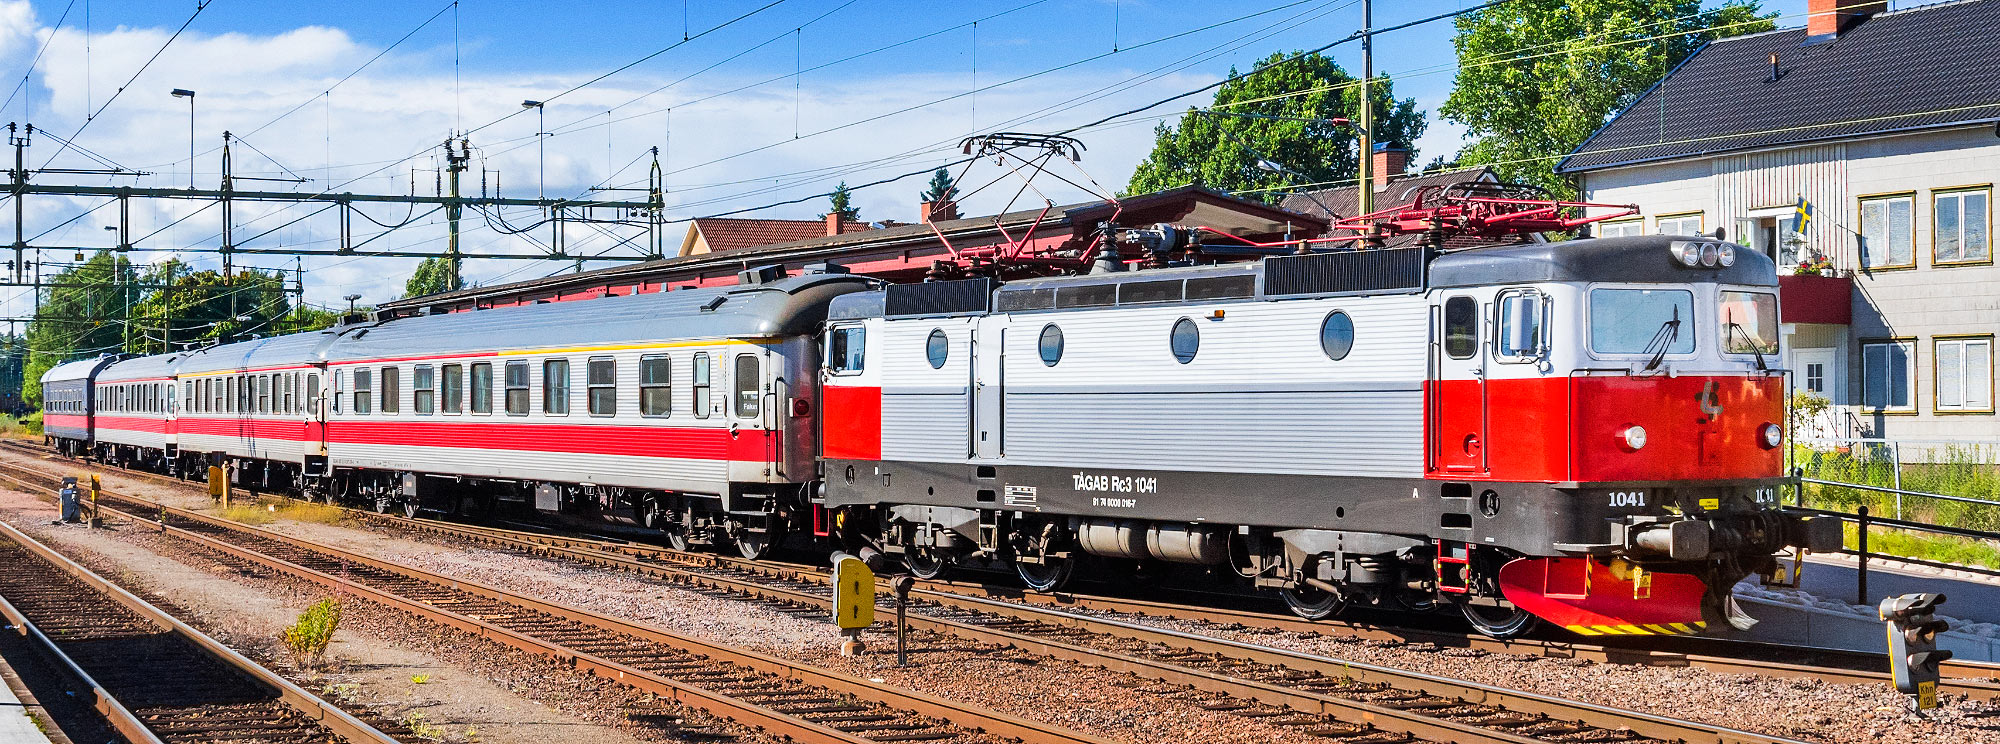 Tågab Rc3 1041 meed persontåg i Kristinehamn 2016